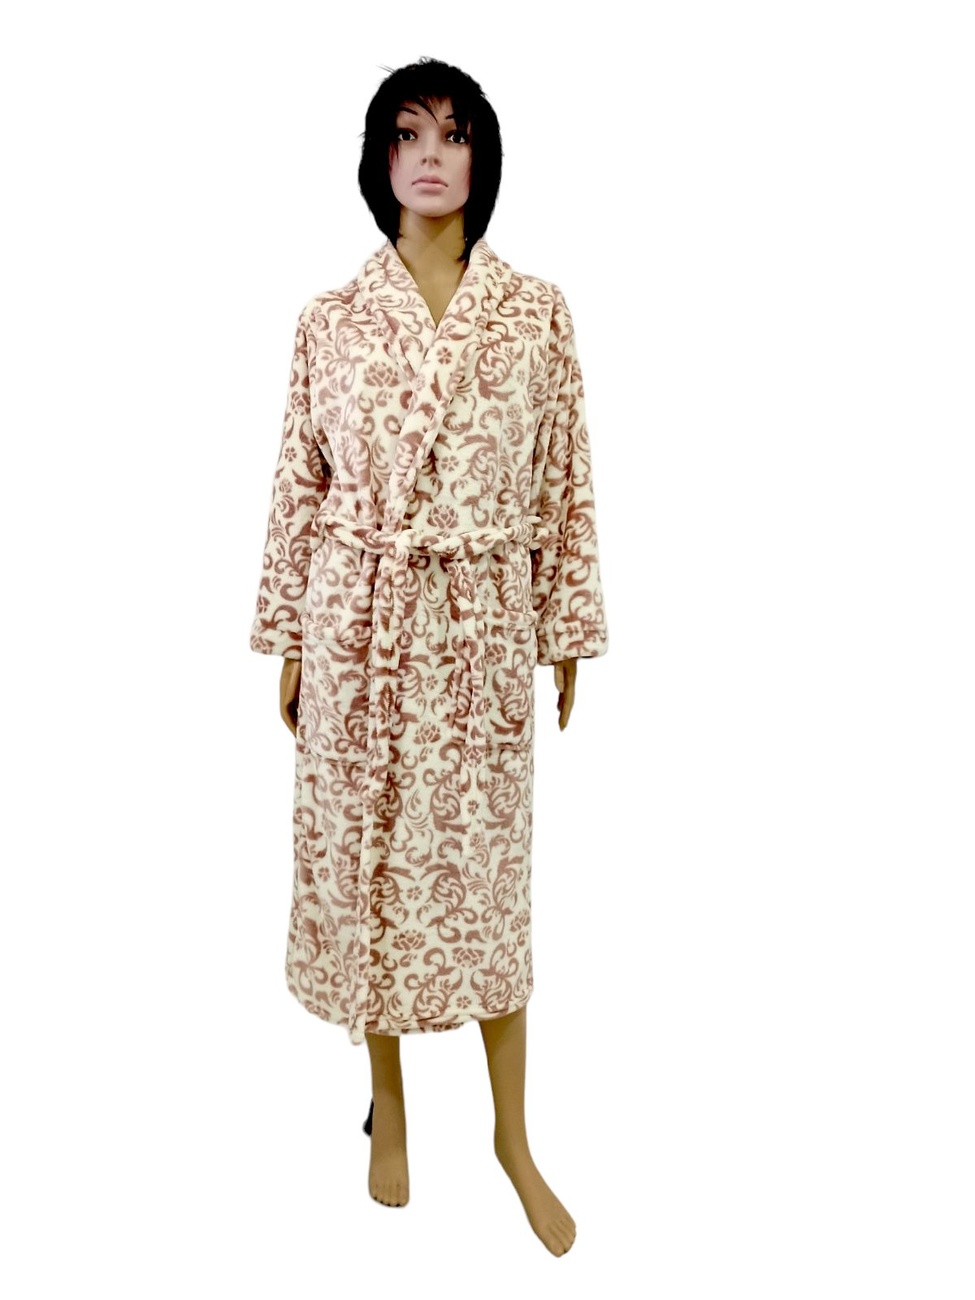 Жіночий халат "ПАУЛА" рвана махра коричневого кольору, Коричневий, 44-46